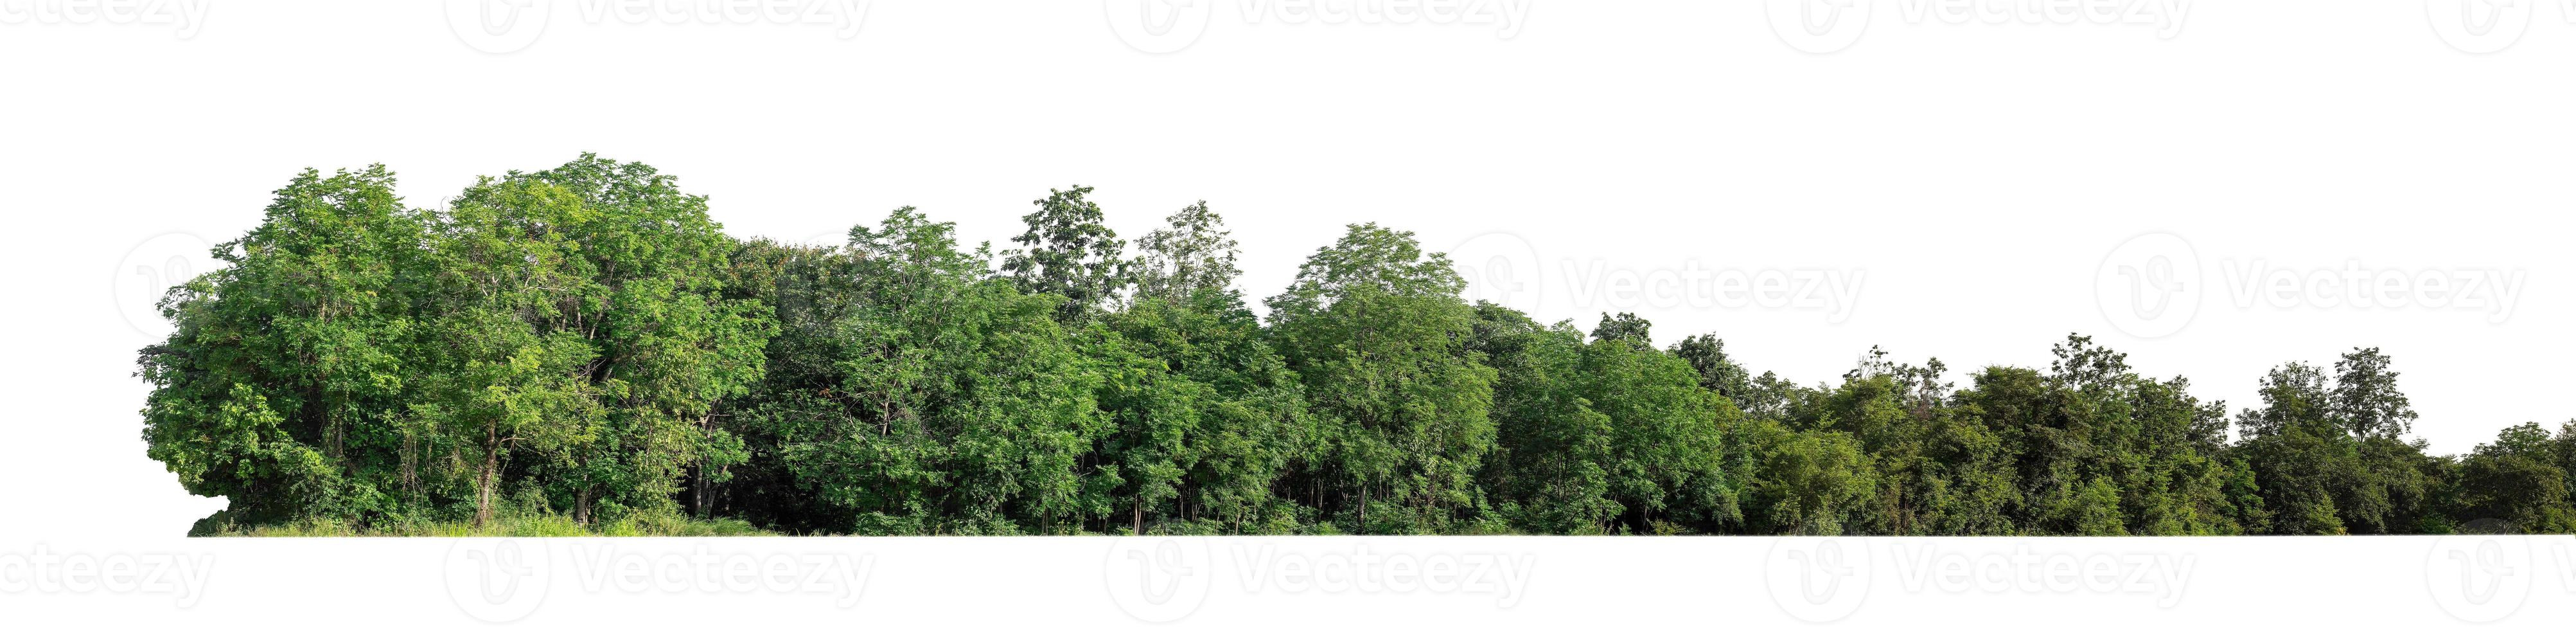 bosque y follaje en verano tanto para impresión como para páginas web aisladas en fondo blanco foto